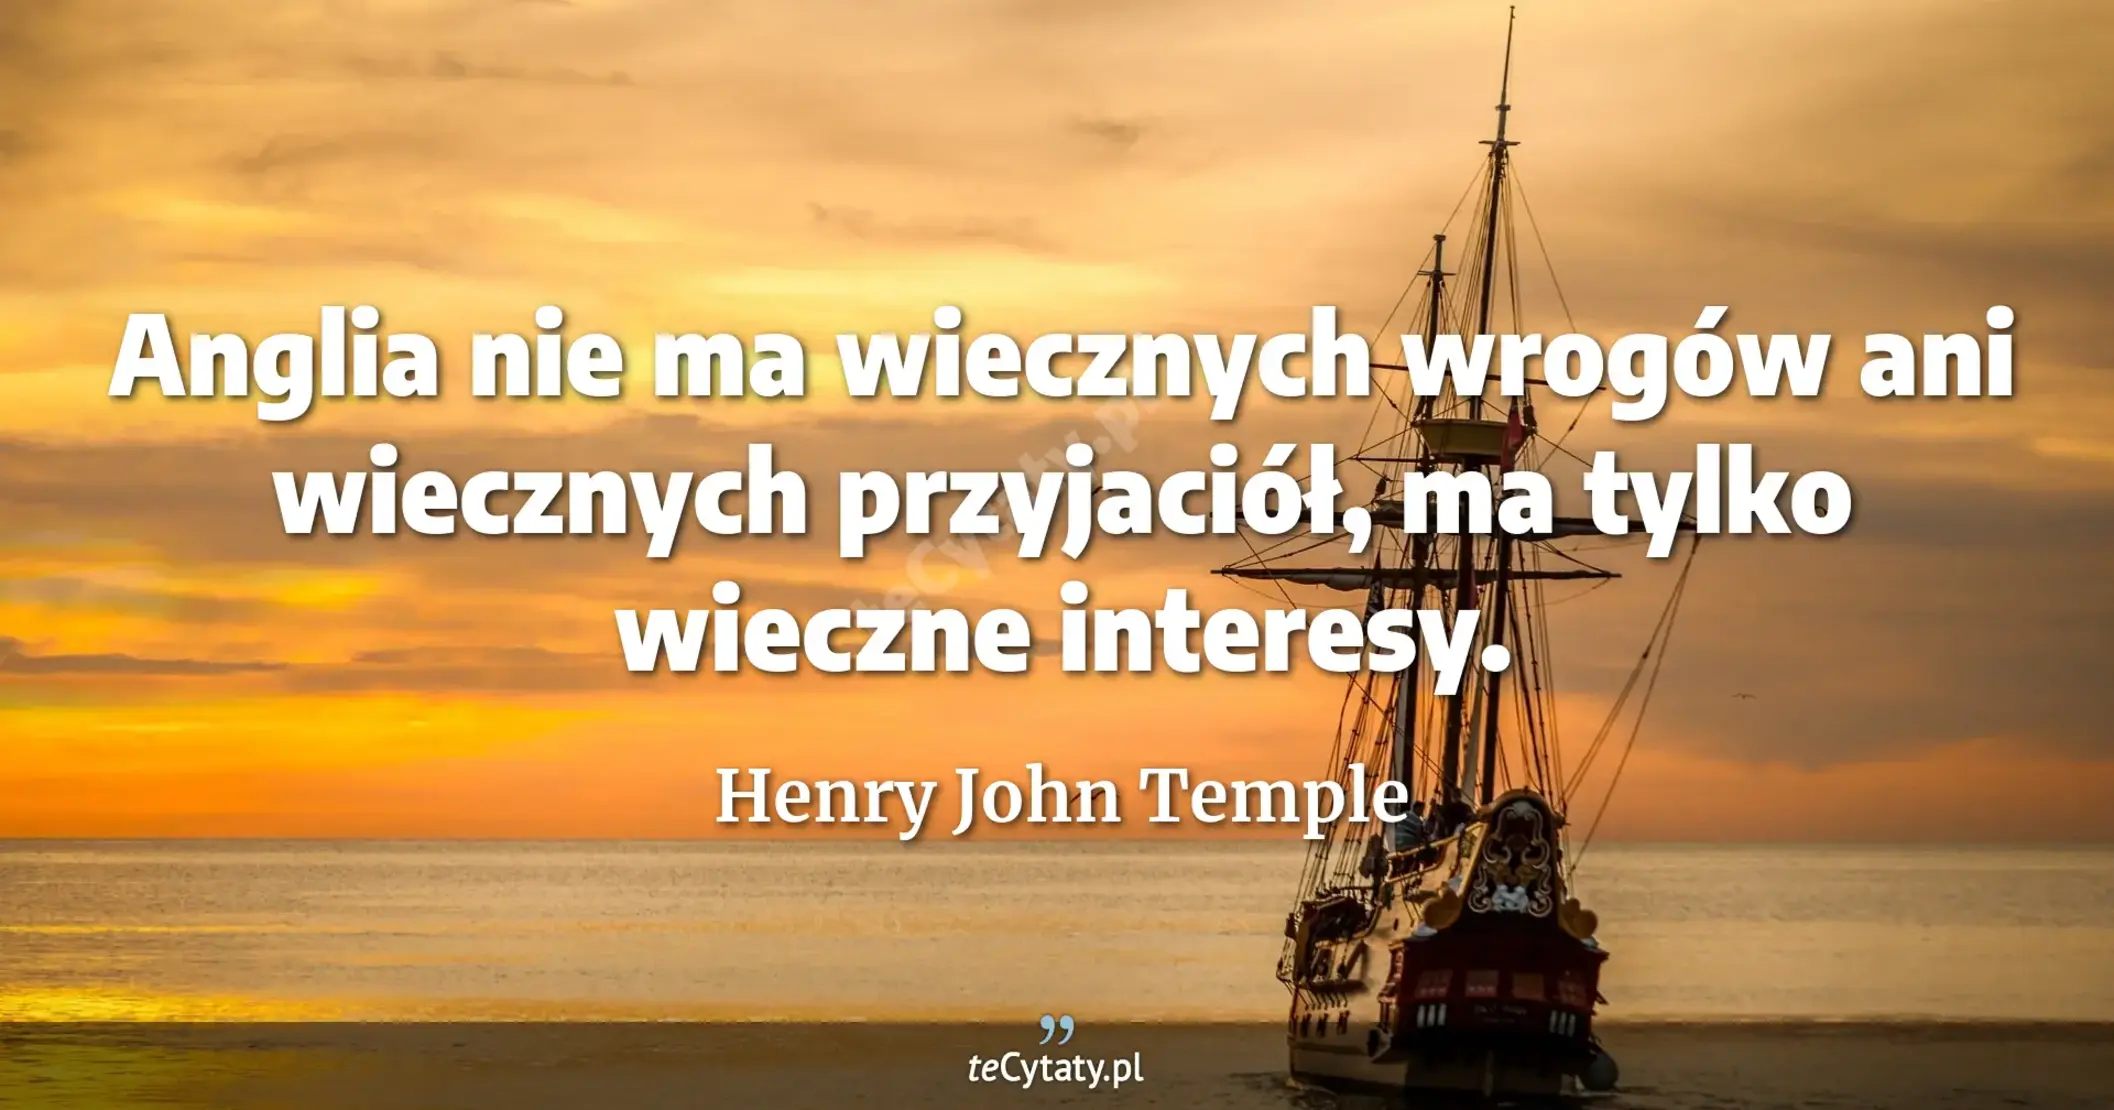 Anglia nie ma wiecznych wrogów ani wiecznych przyjaciół, ma tylko wieczne interesy. - Henry John Temple